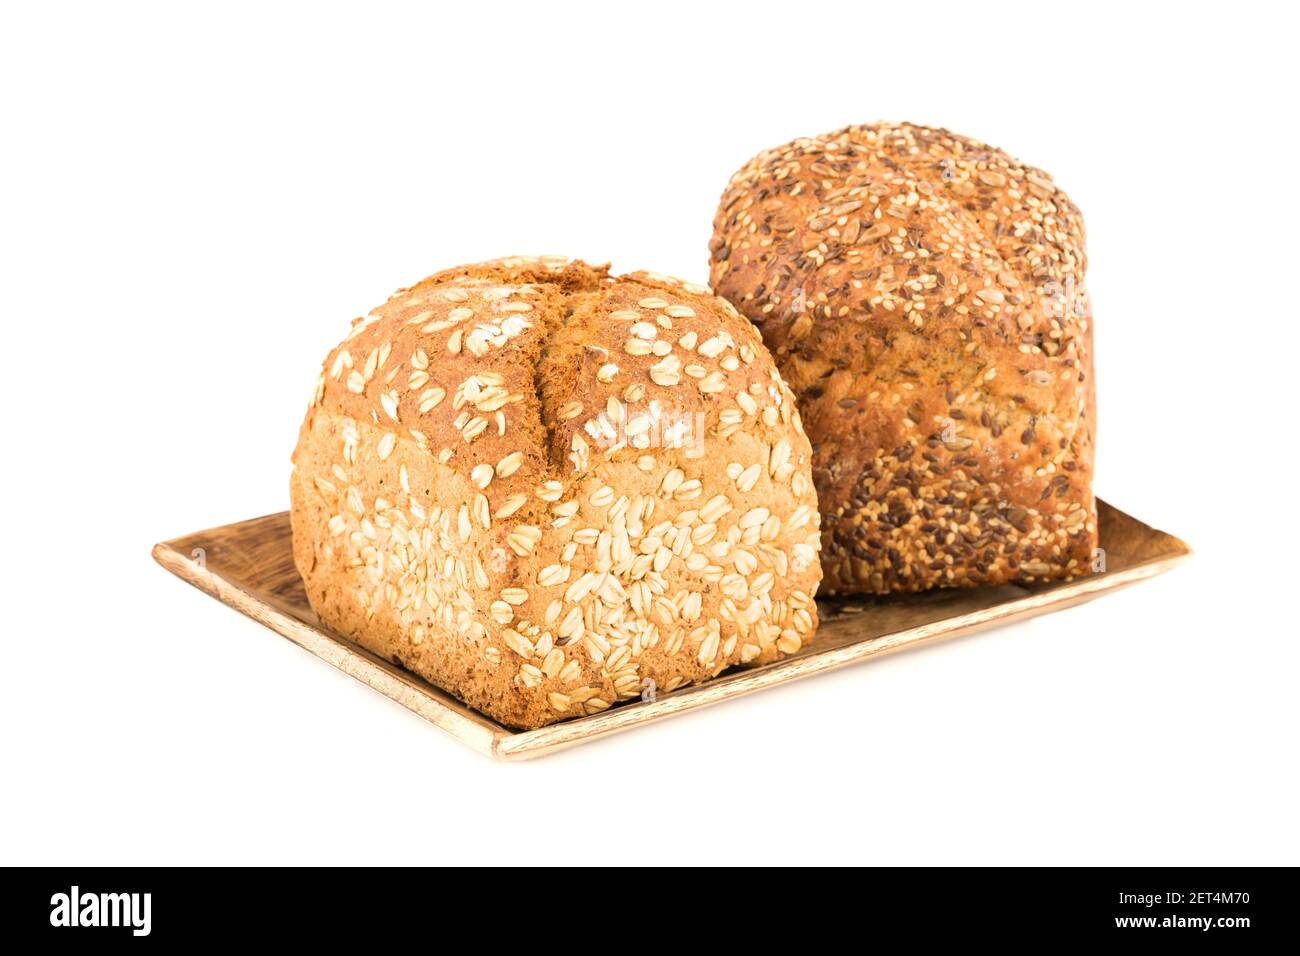 Grappoli di pane integrale con semi e avena su vassoio di legno isolato su sfondo bianco. Foto Stock